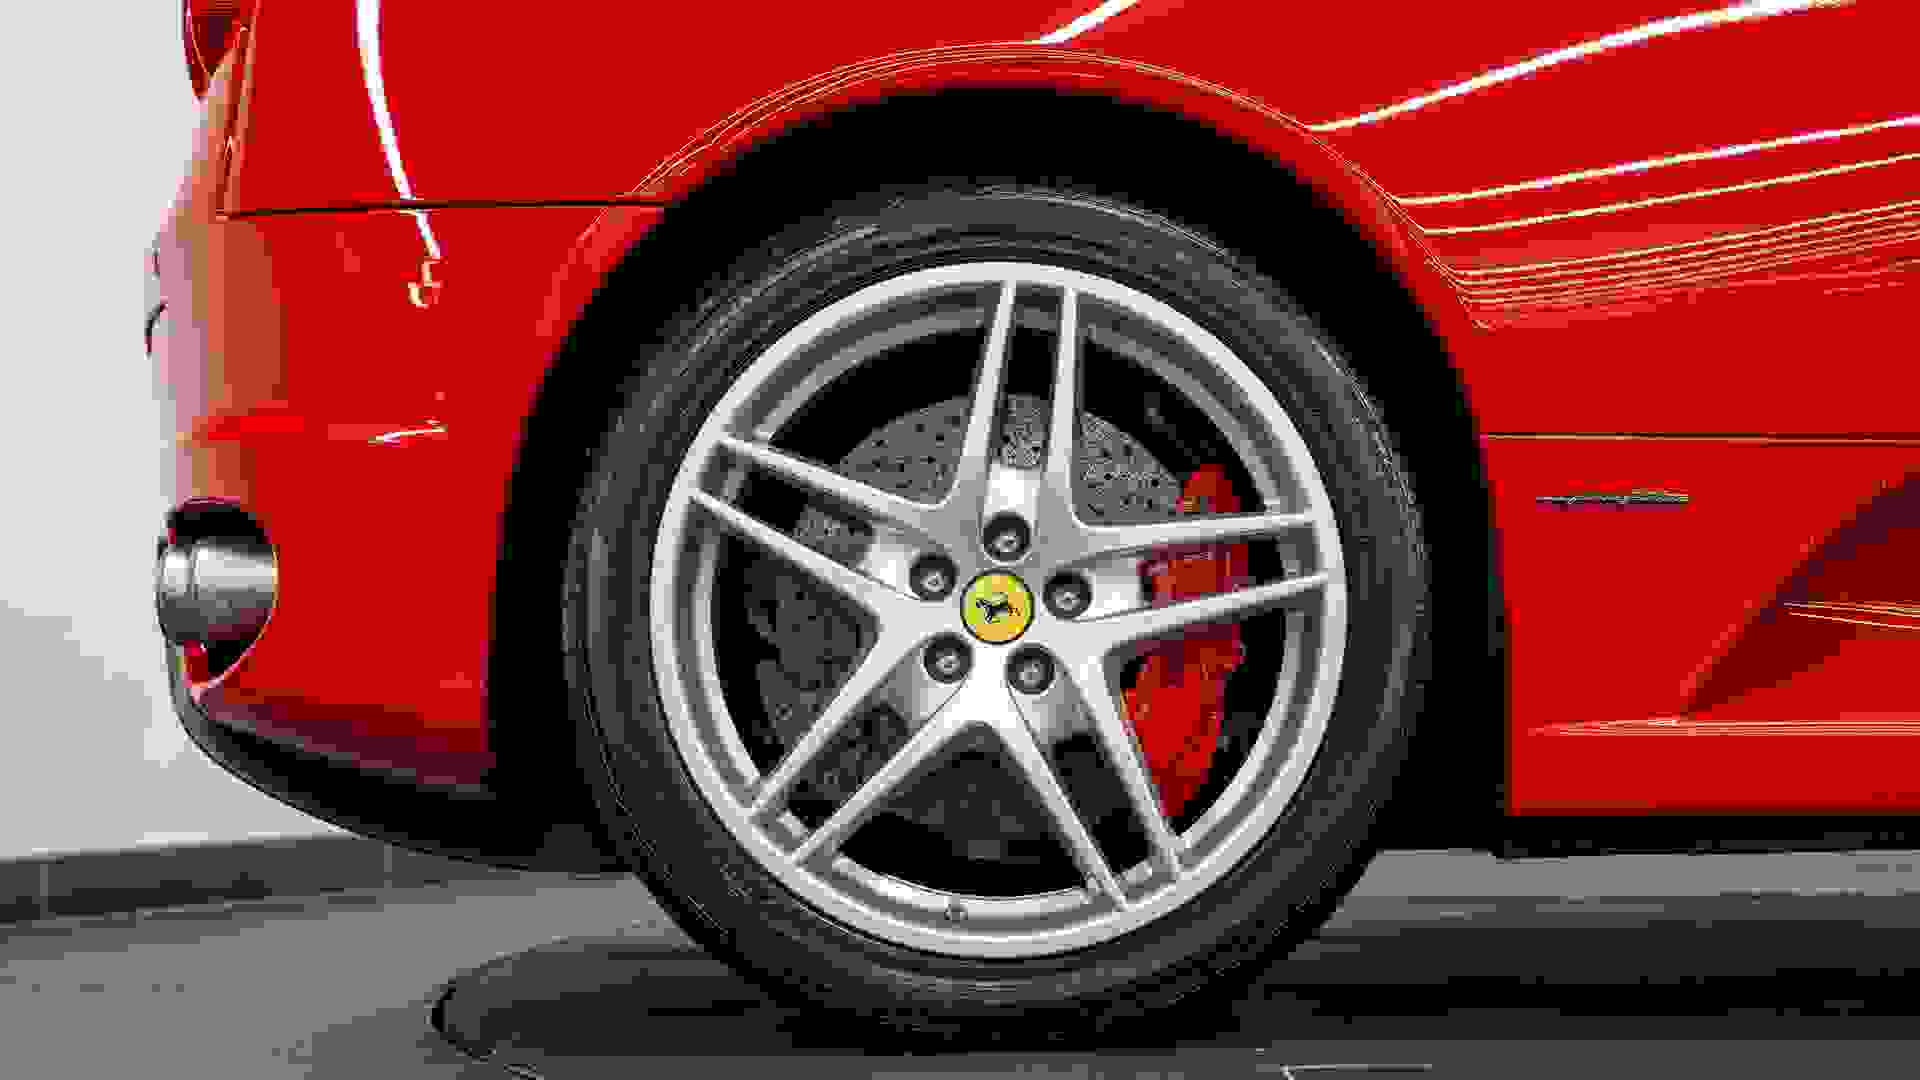 Ferrari F430 Photo 7b900bd7-871d-48d8-b3df-b64efa7365ff.jpg